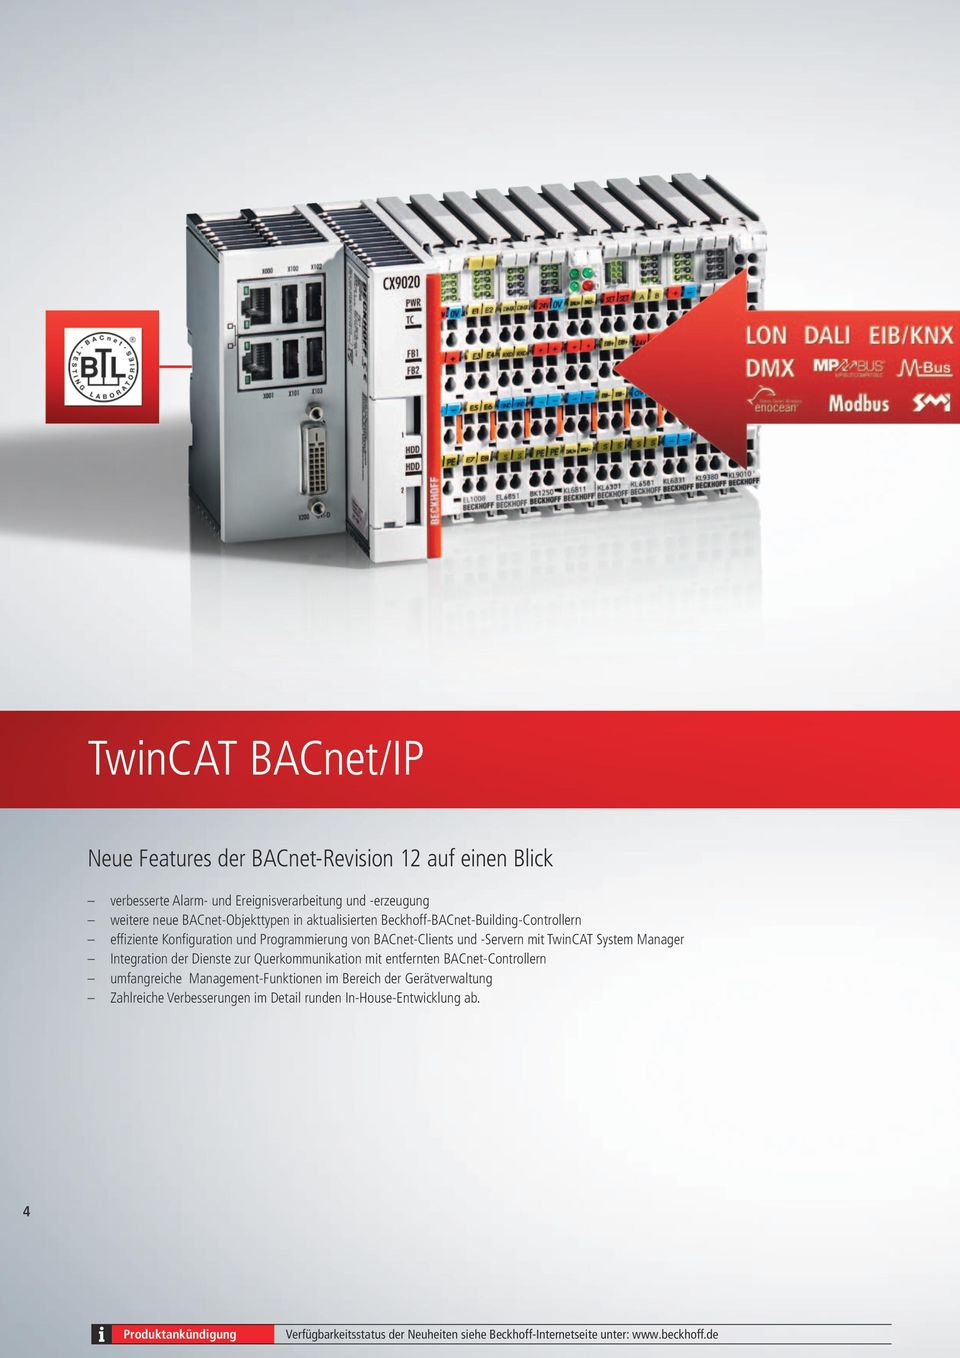 TwinCAT System Manager Integration der Dienste zur Querkommunikation mit entfernten BACnet-Controllern umfangreiche Management-Funktionen im Bereich der